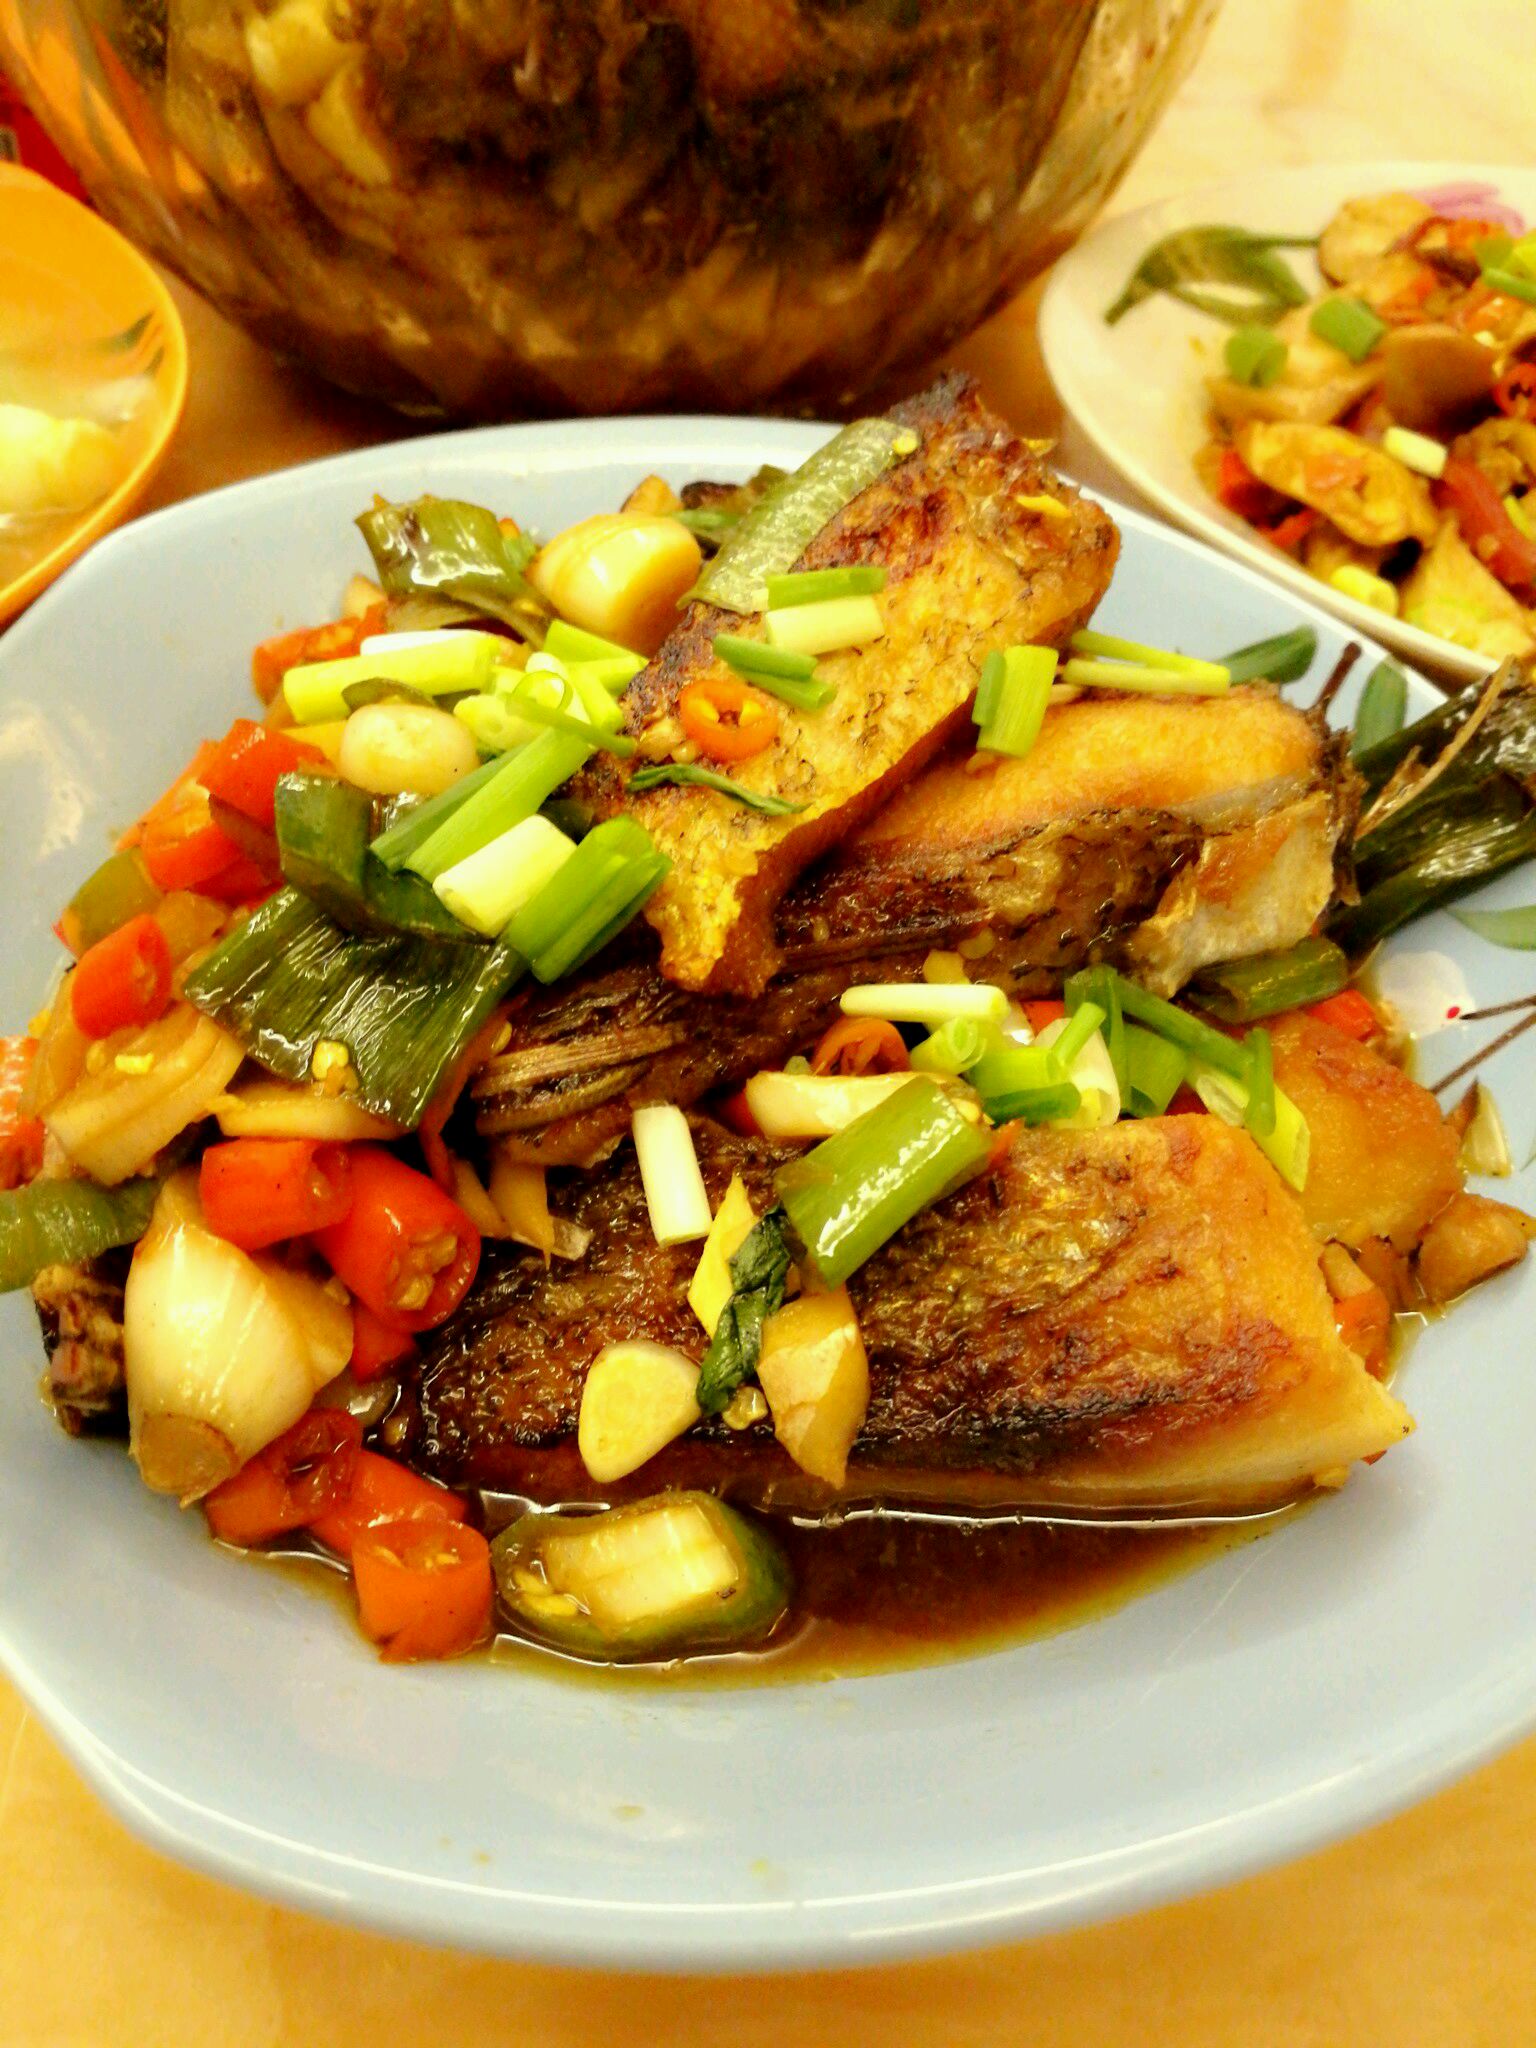 砂锅焖鱼块,砂锅焖鱼块的家常做法 - 美食杰砂锅焖鱼块做法大全